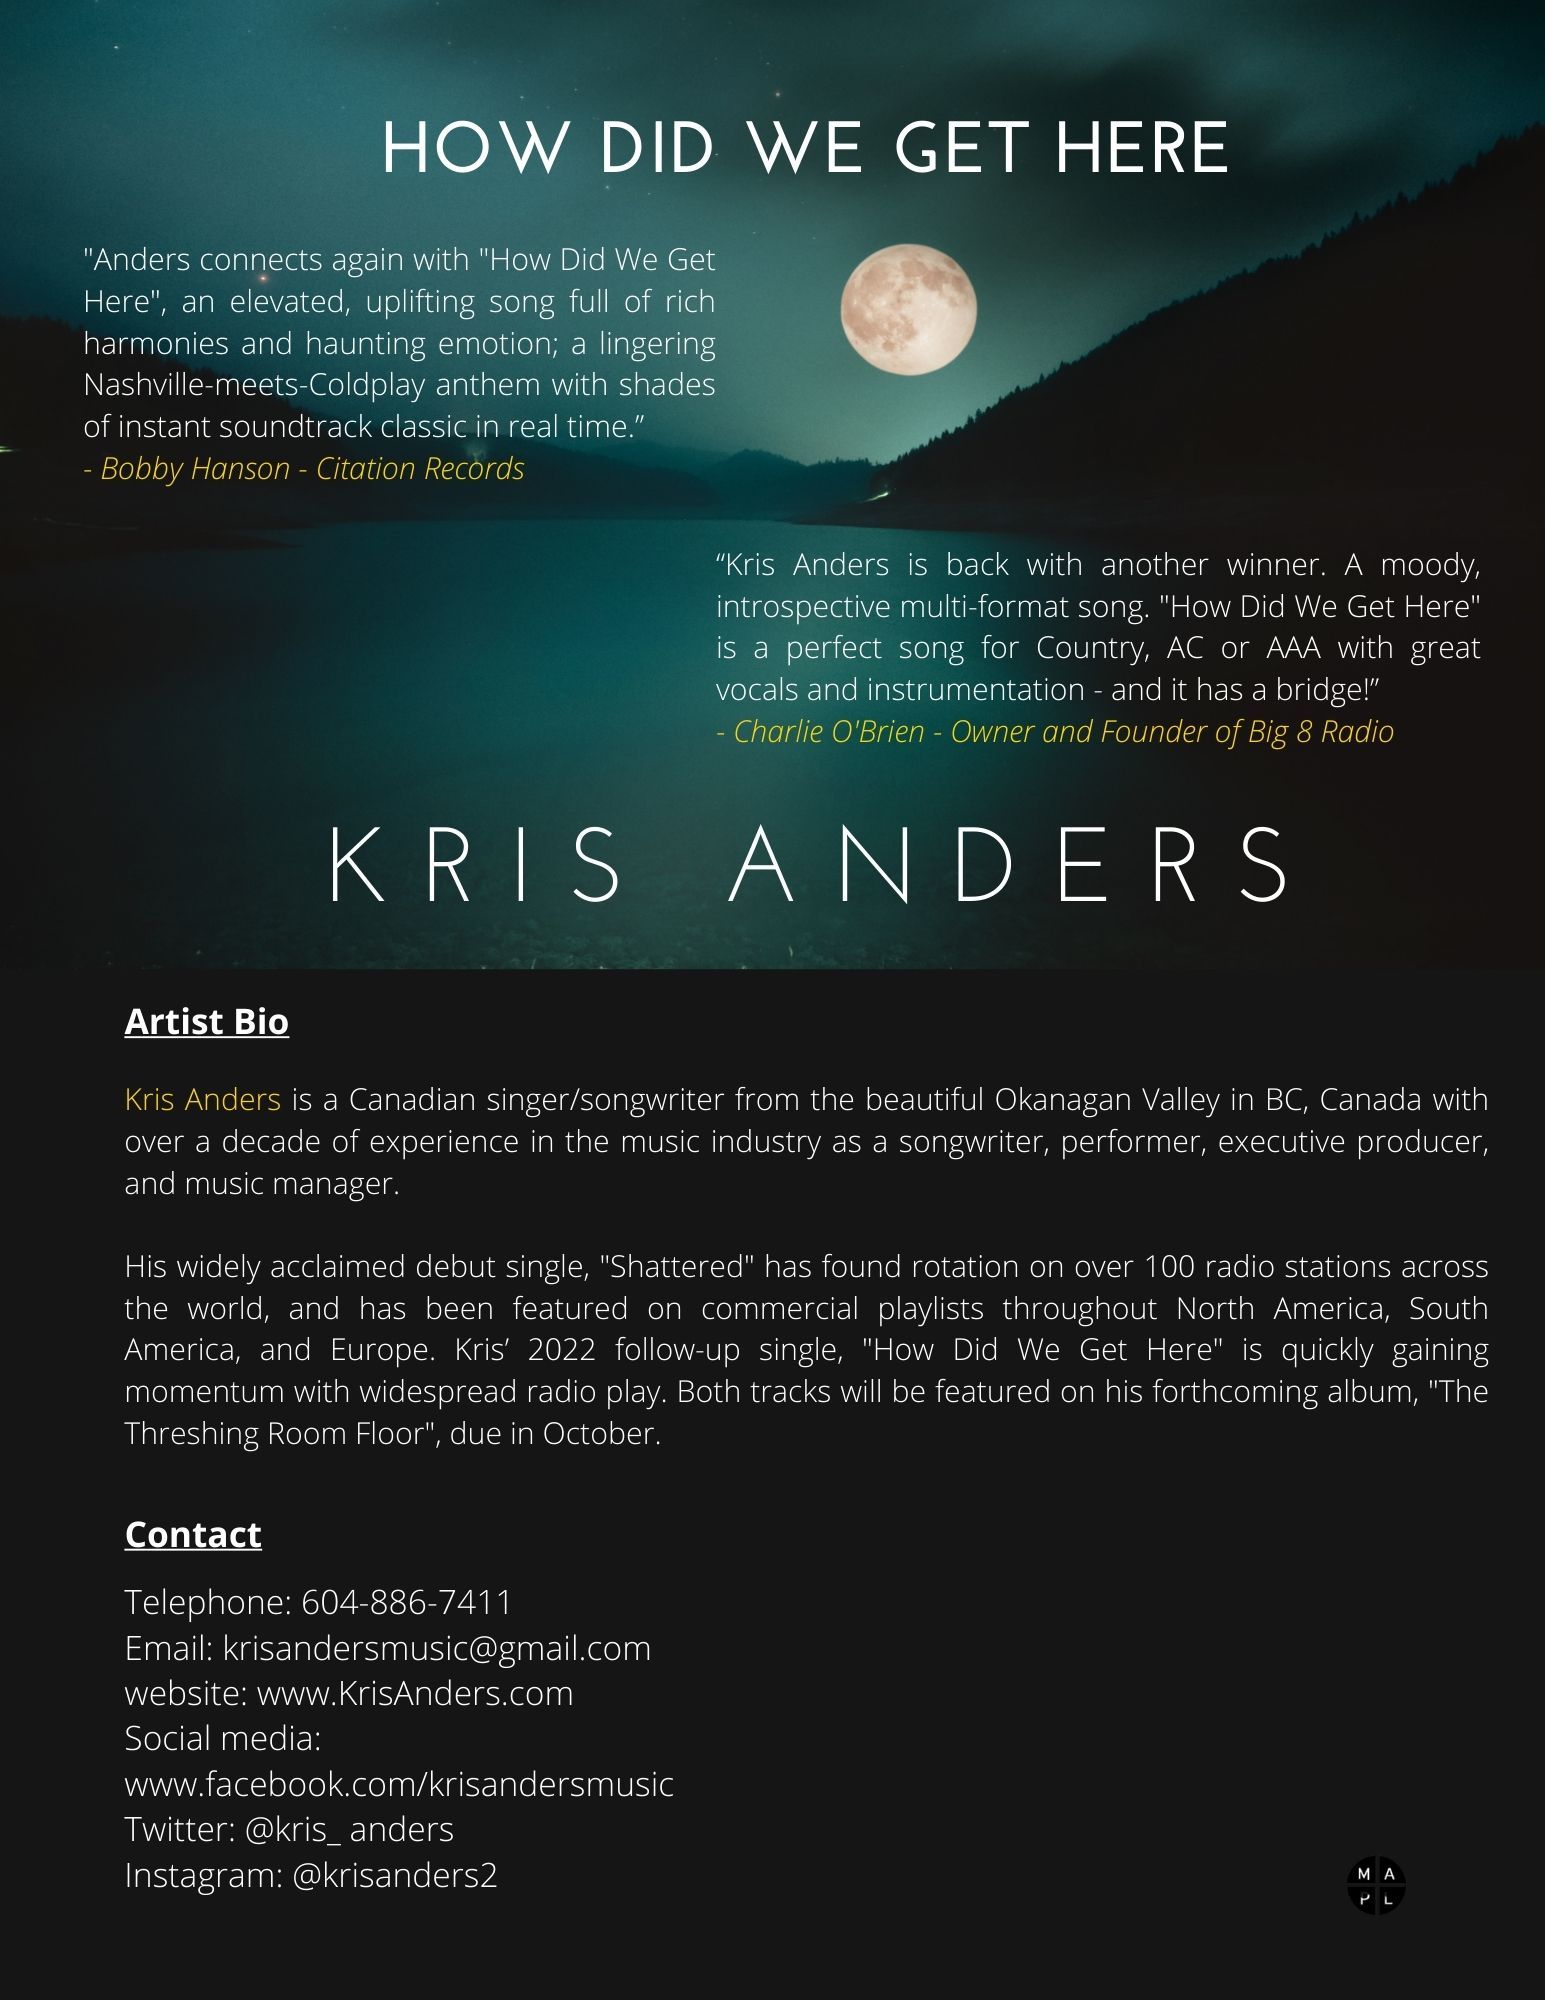 Kris Anders